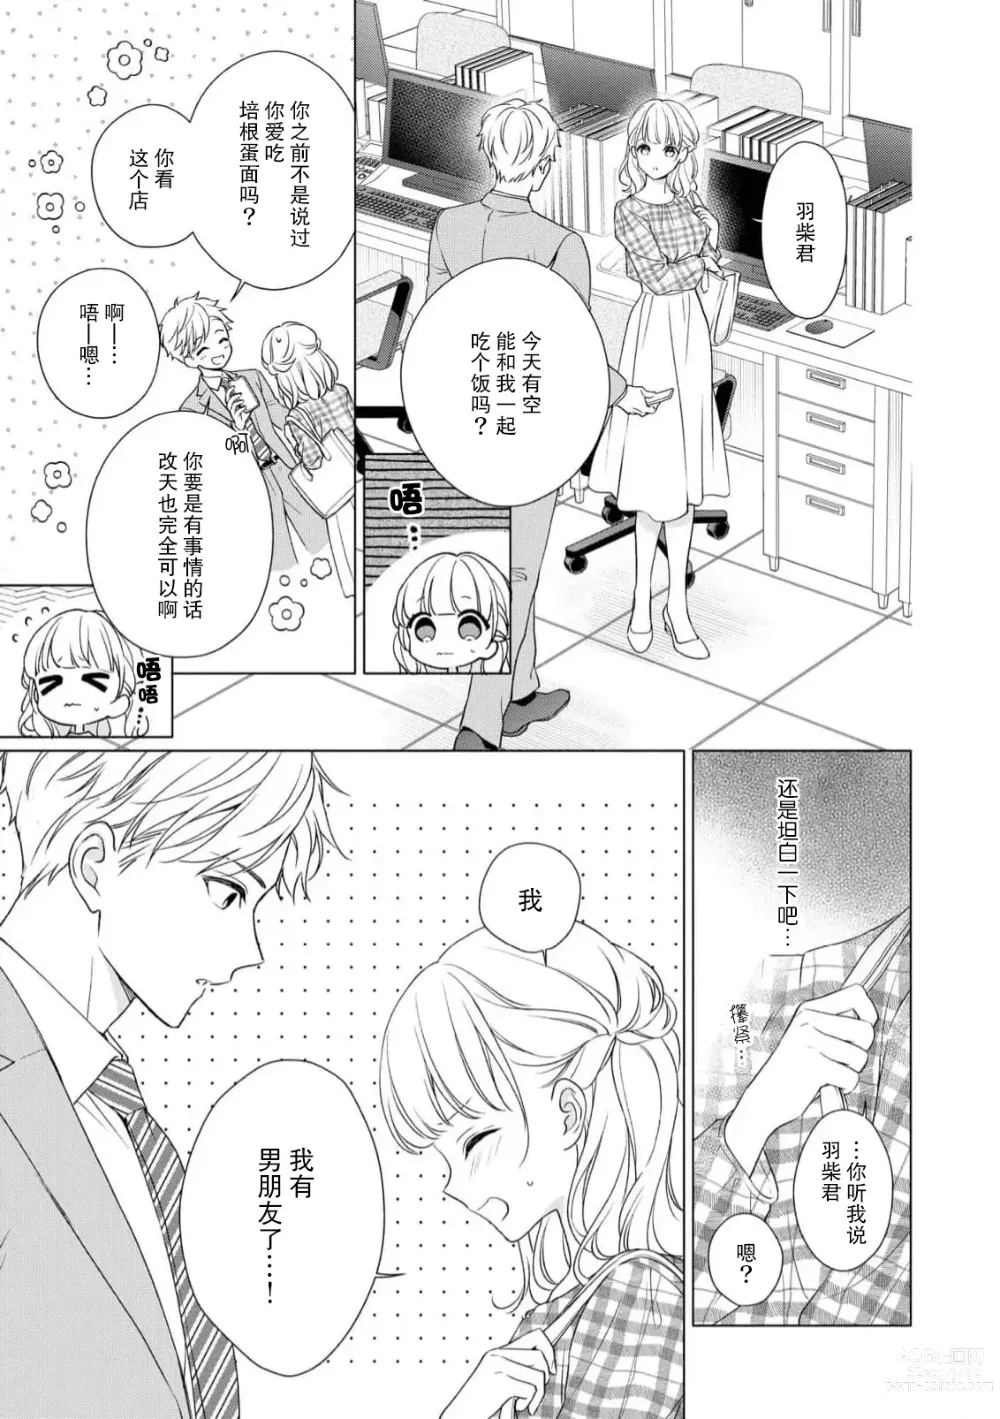 Page 4 of manga 宠爱社长贪恋我 ~用甘甜的毒将深处也融化~